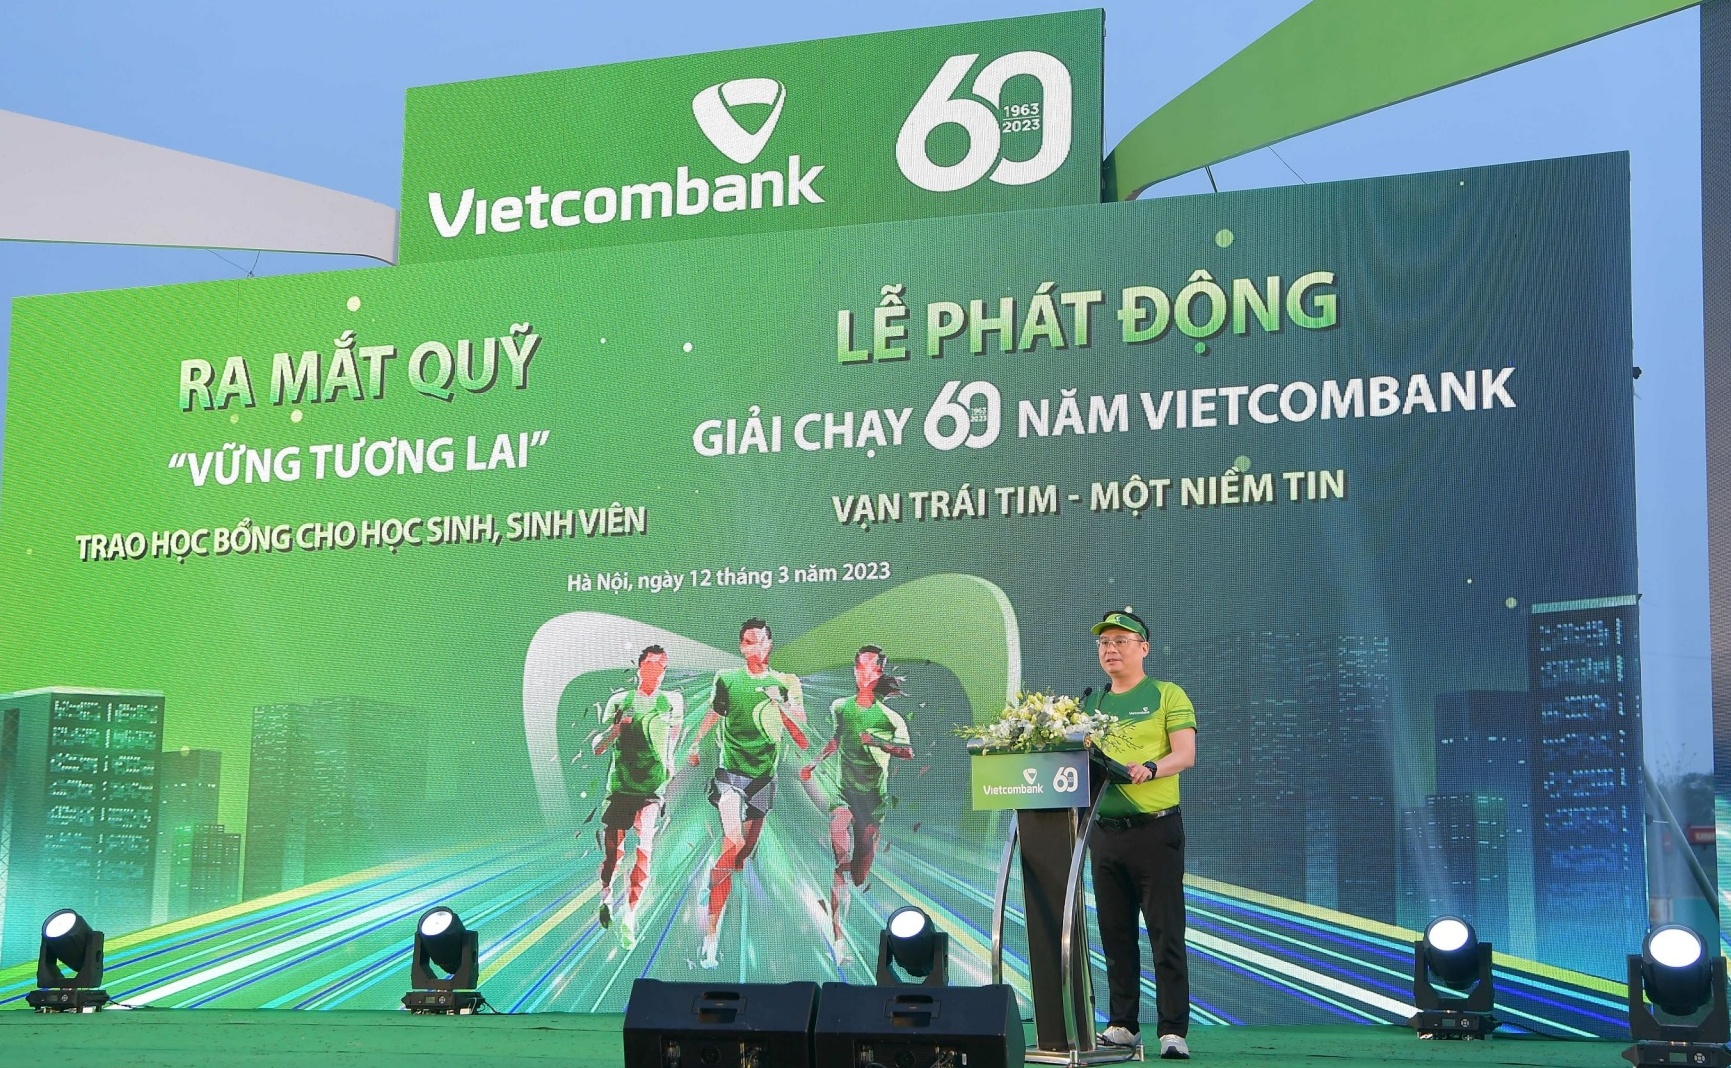 Vietcombank ra mắt Quỹ “Vững tương lai”và phát động Giải chạy 60 năm “Vạn trái tim - Một niềm tin”